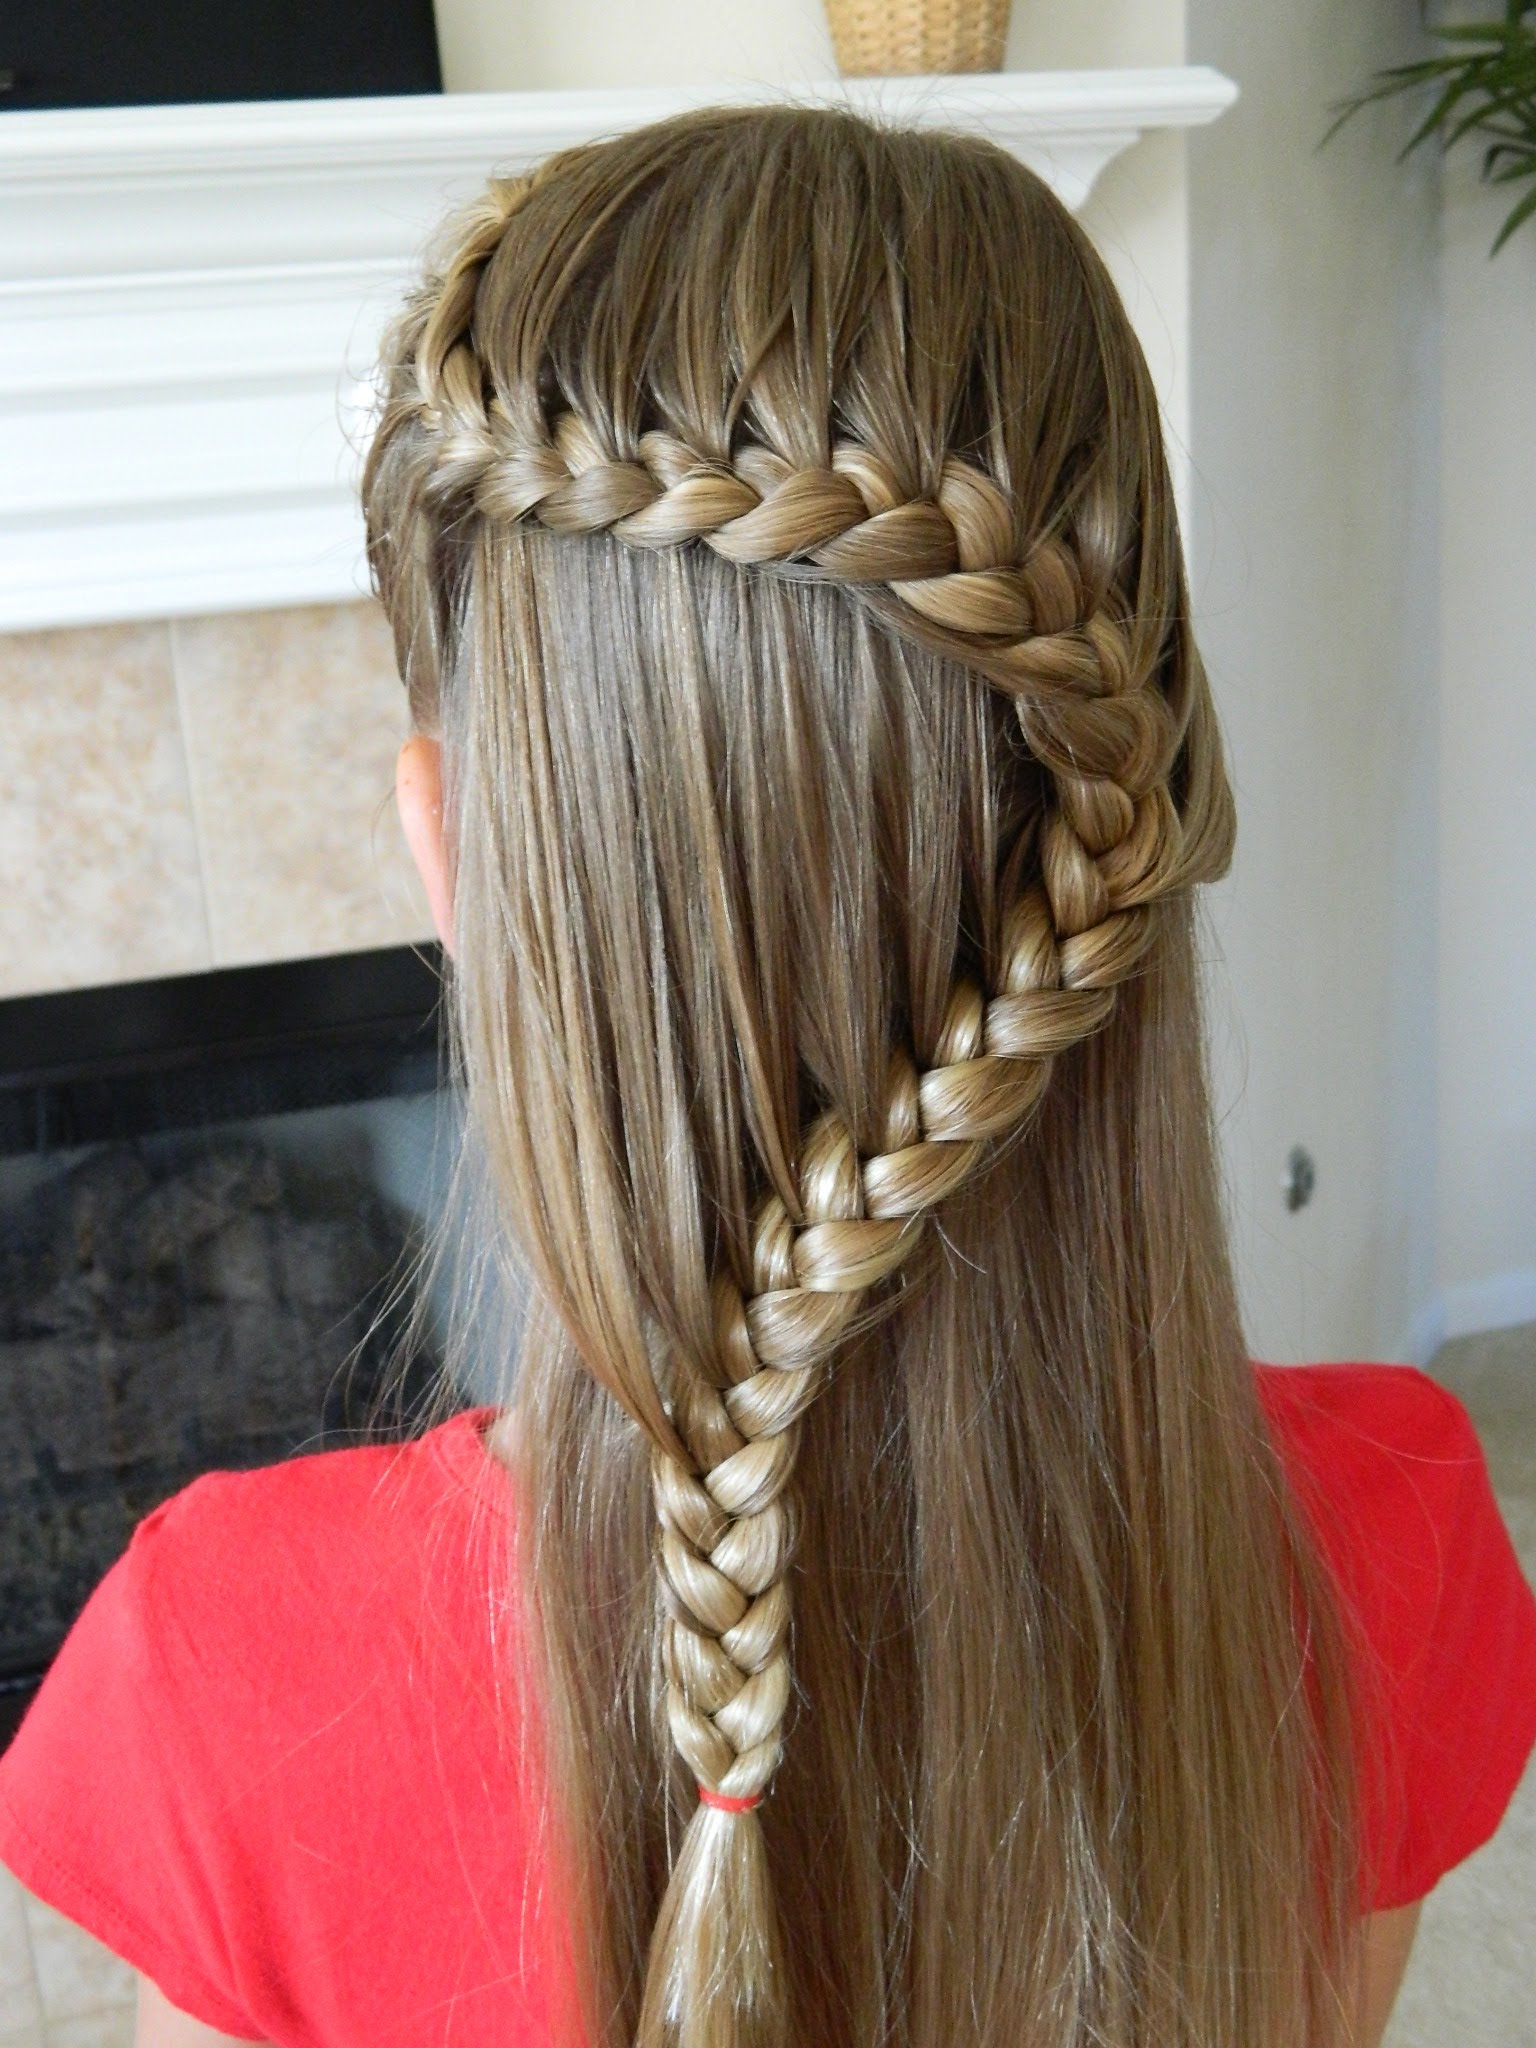 Красивые прически для девочек на длинные волосы: красивые 13 повседневных школьных причёсок и праздничные варианты